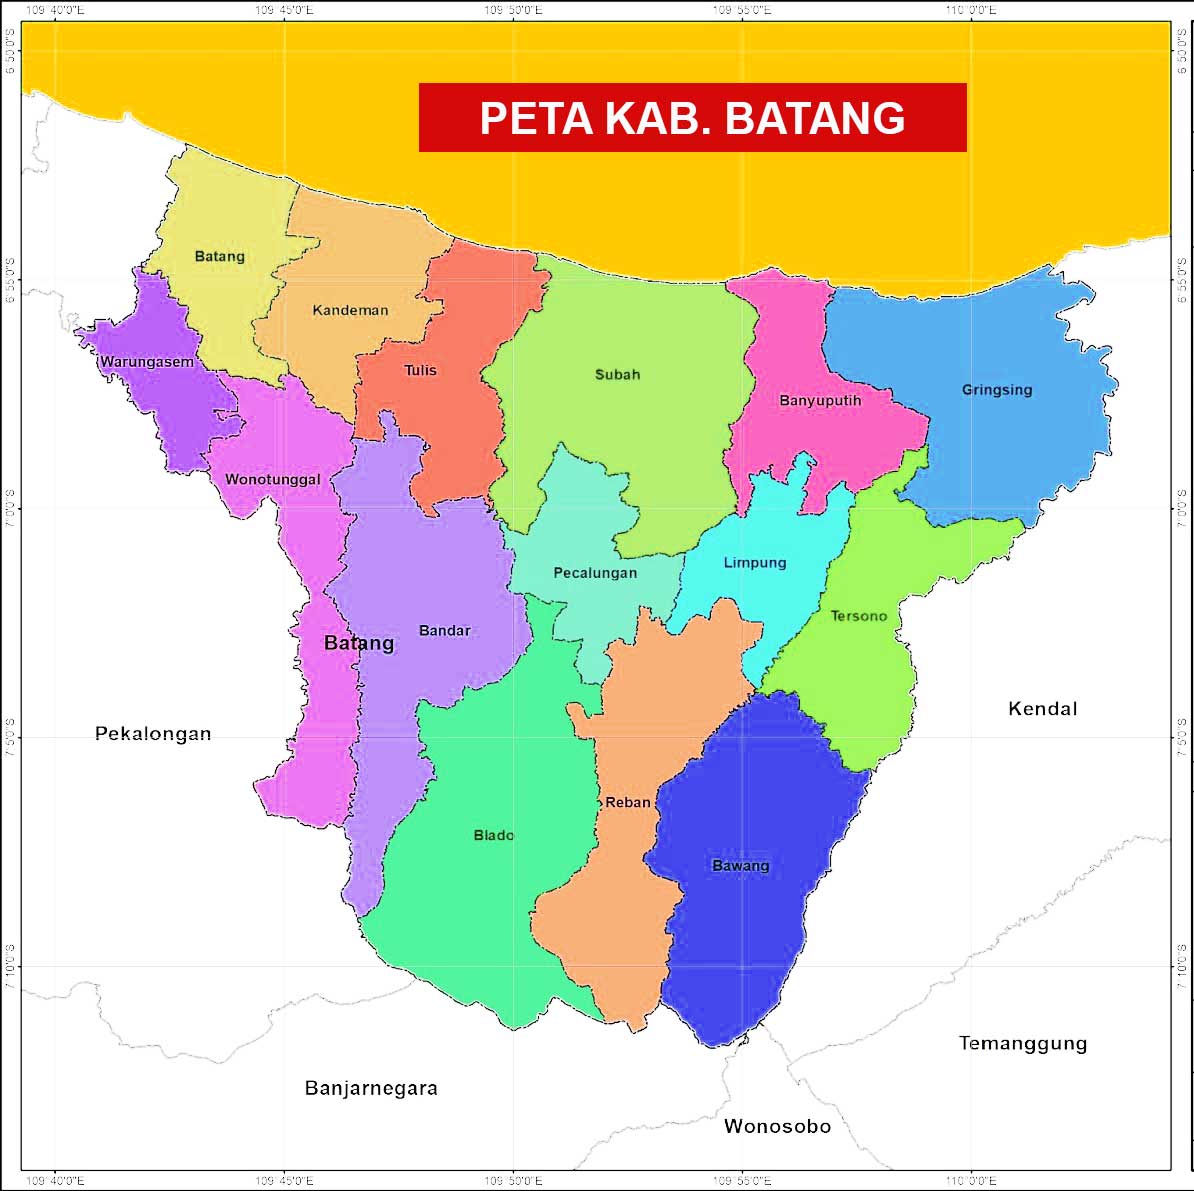 Peta kabupaten Batang